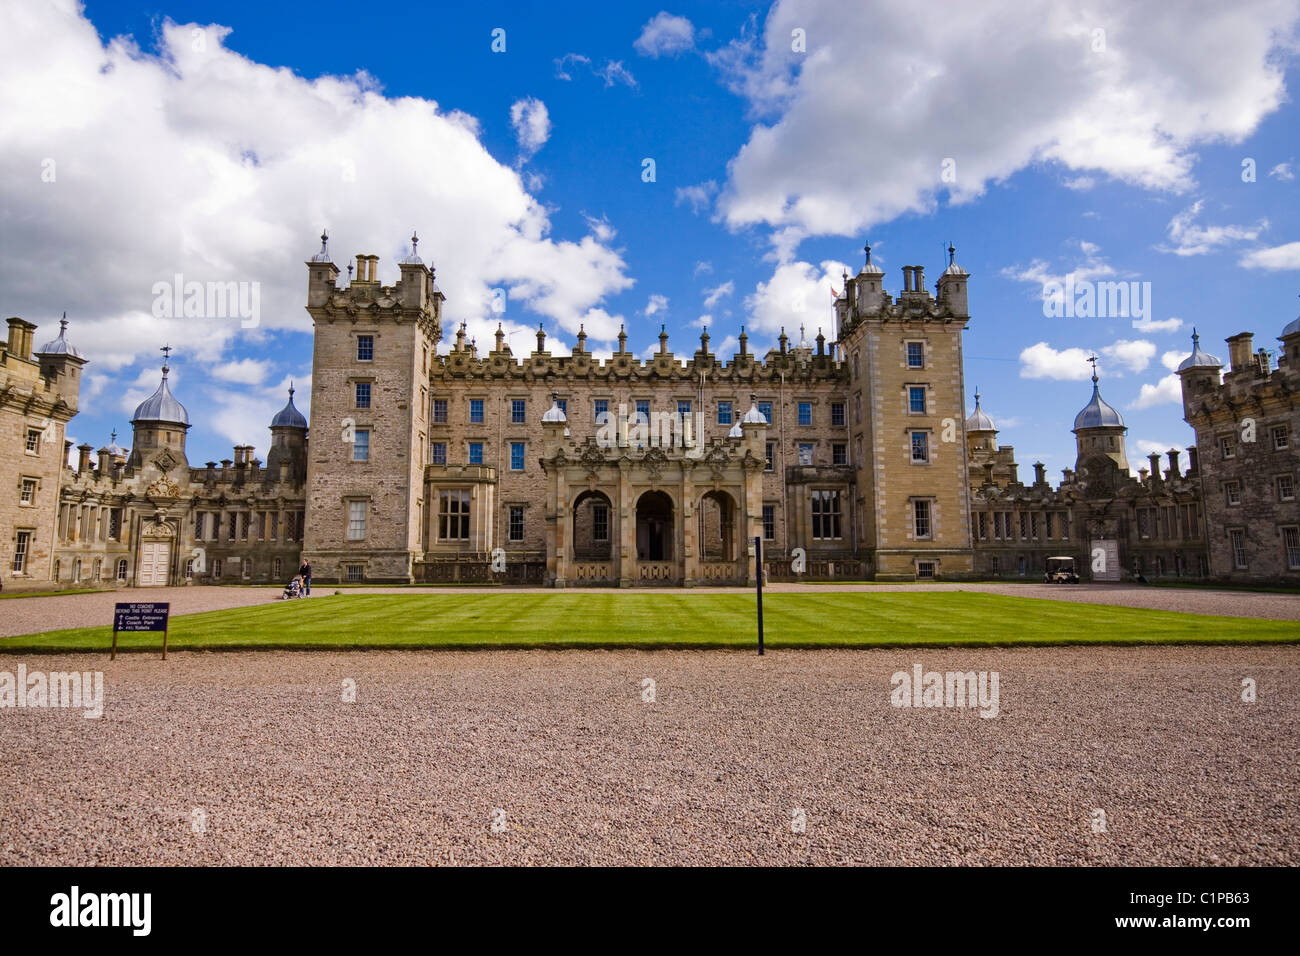 La Scozia, Lothian e frontiere, pavimenti Castello, facciata del castello con prato in primo piano, cielo blu e nuvole bianche al di sopra Foto Stock